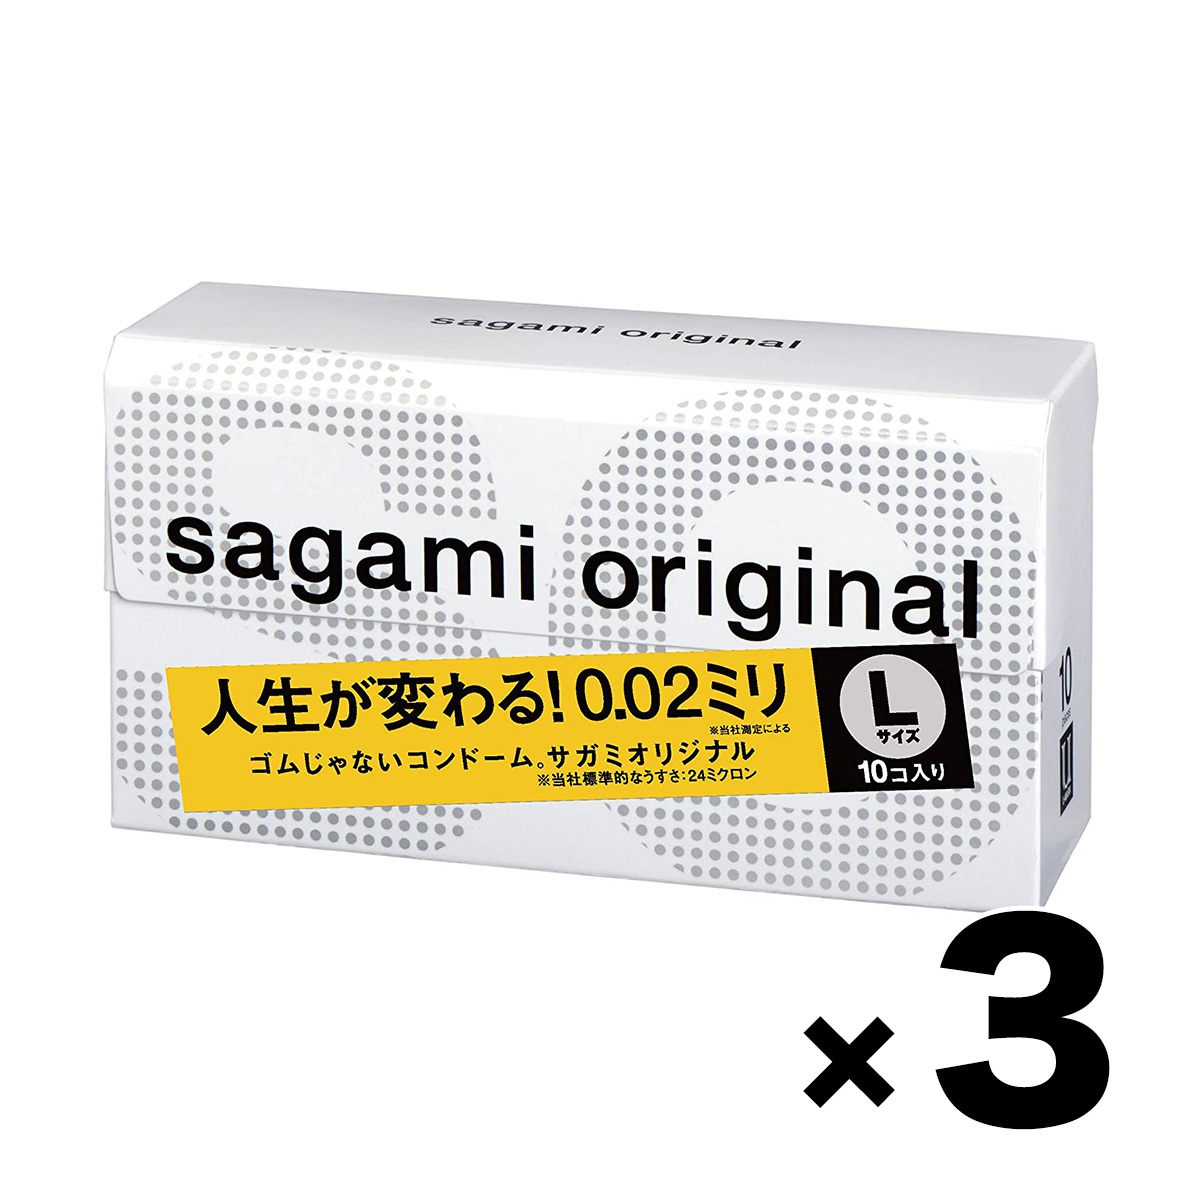 サガミオリジナル 002 コンドーム 5個入×3箱セット